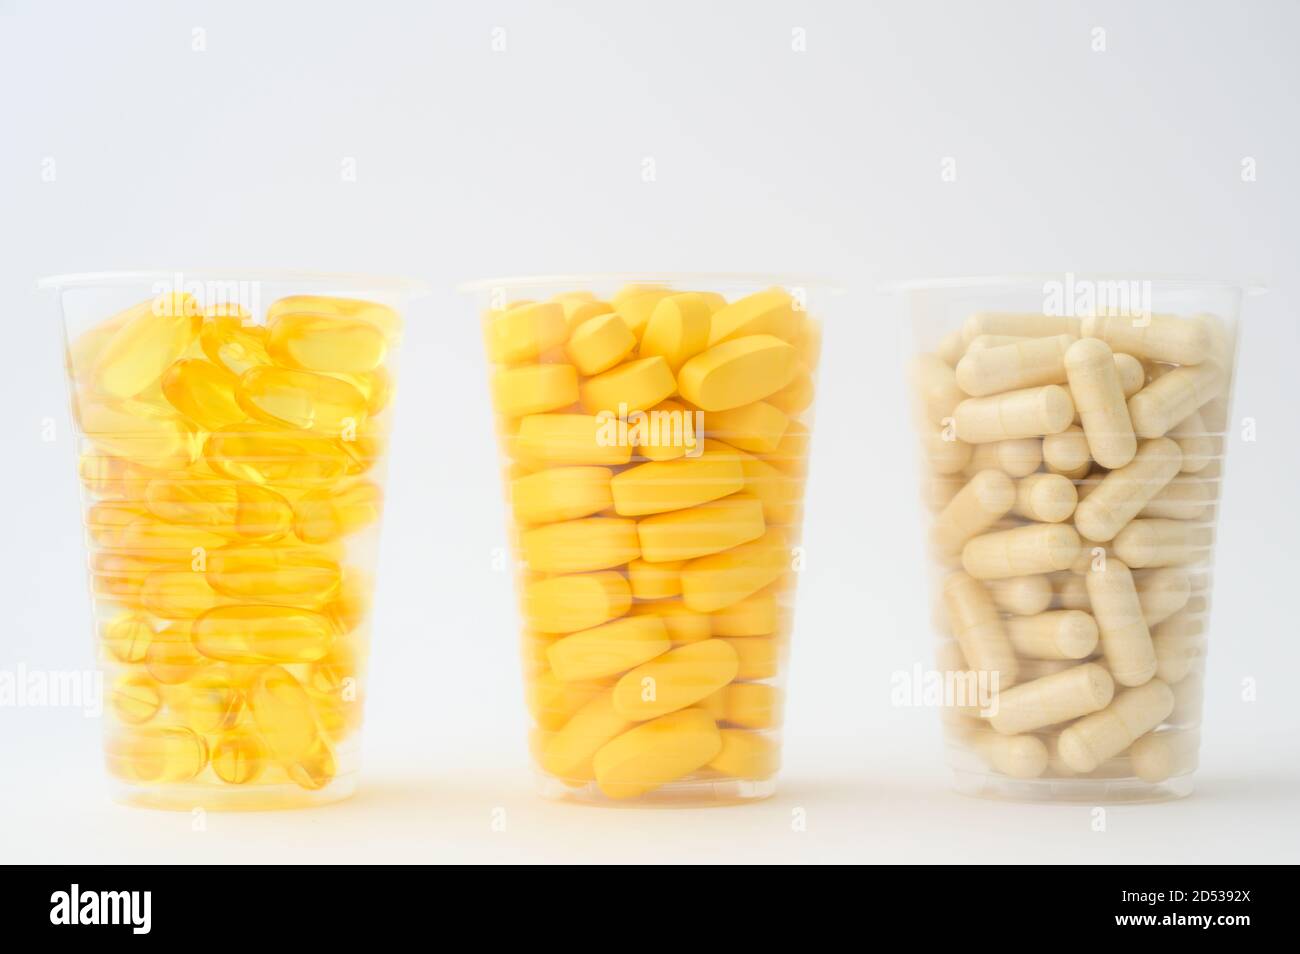 Gesunde Ernährung Konzept der drei Plastikbecher mit Pillen Softgels Omega3 Kapsel Vitamine Tabletten auf weißem Hintergrund mit Kopie Platz Stockfoto